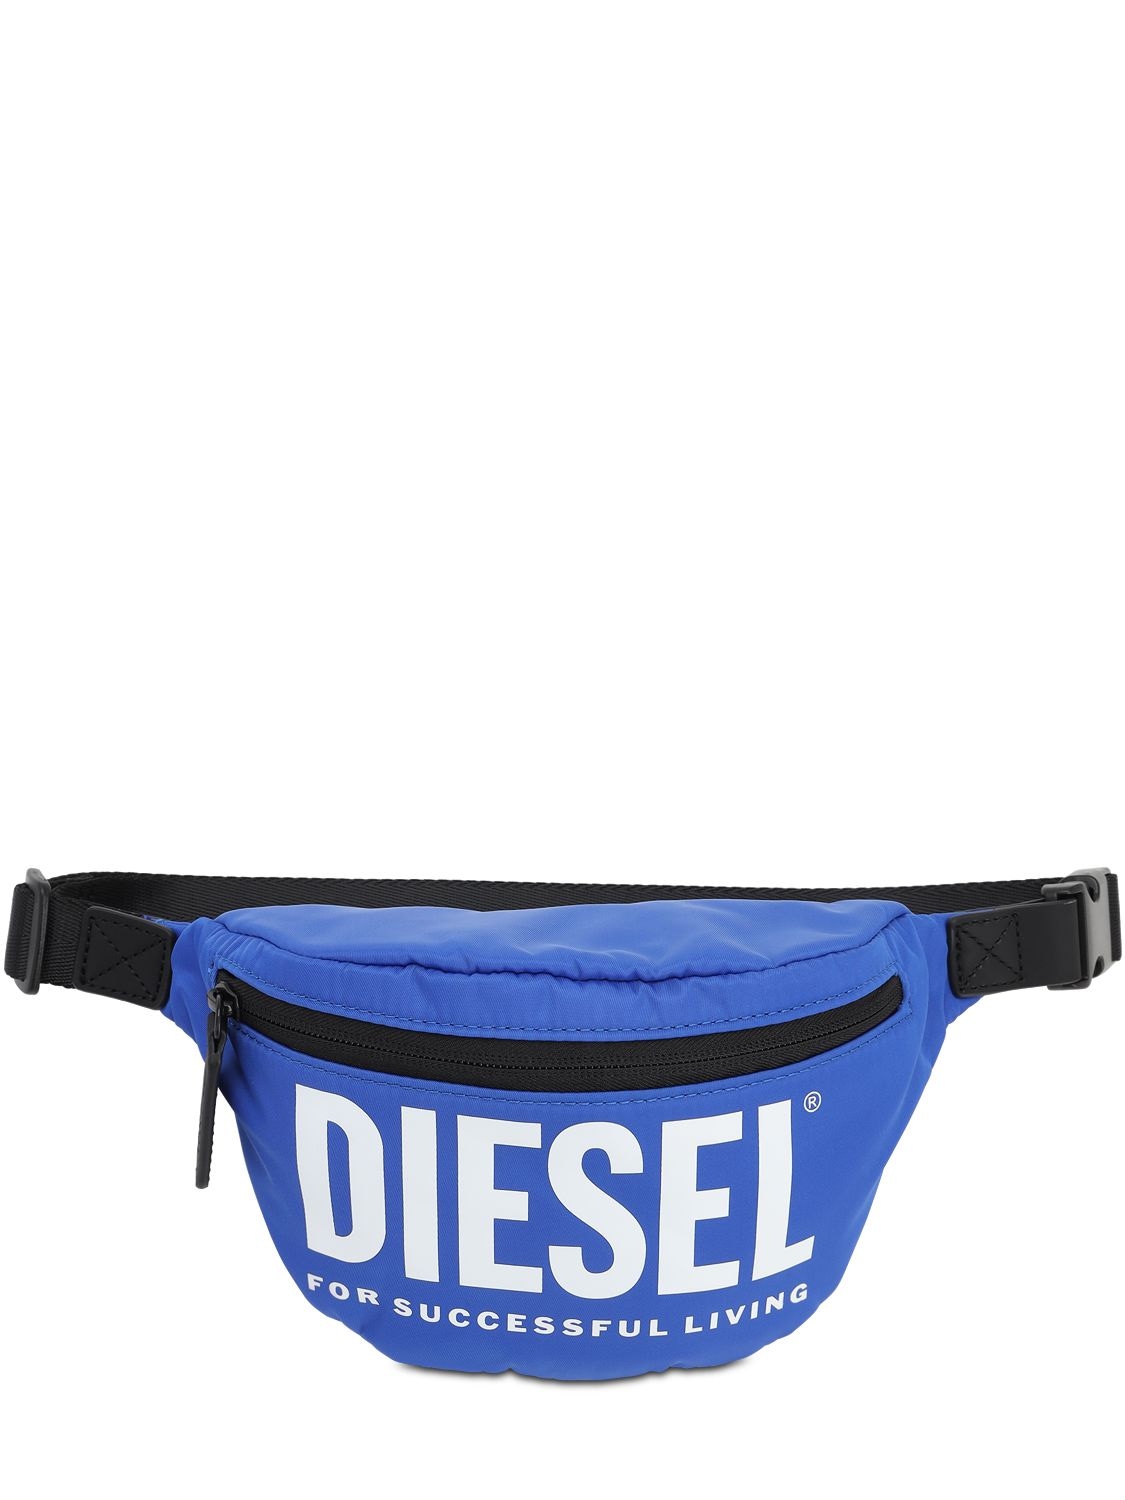 Diesel Kids' Logo Printed Nylon Belt Bag In Blue